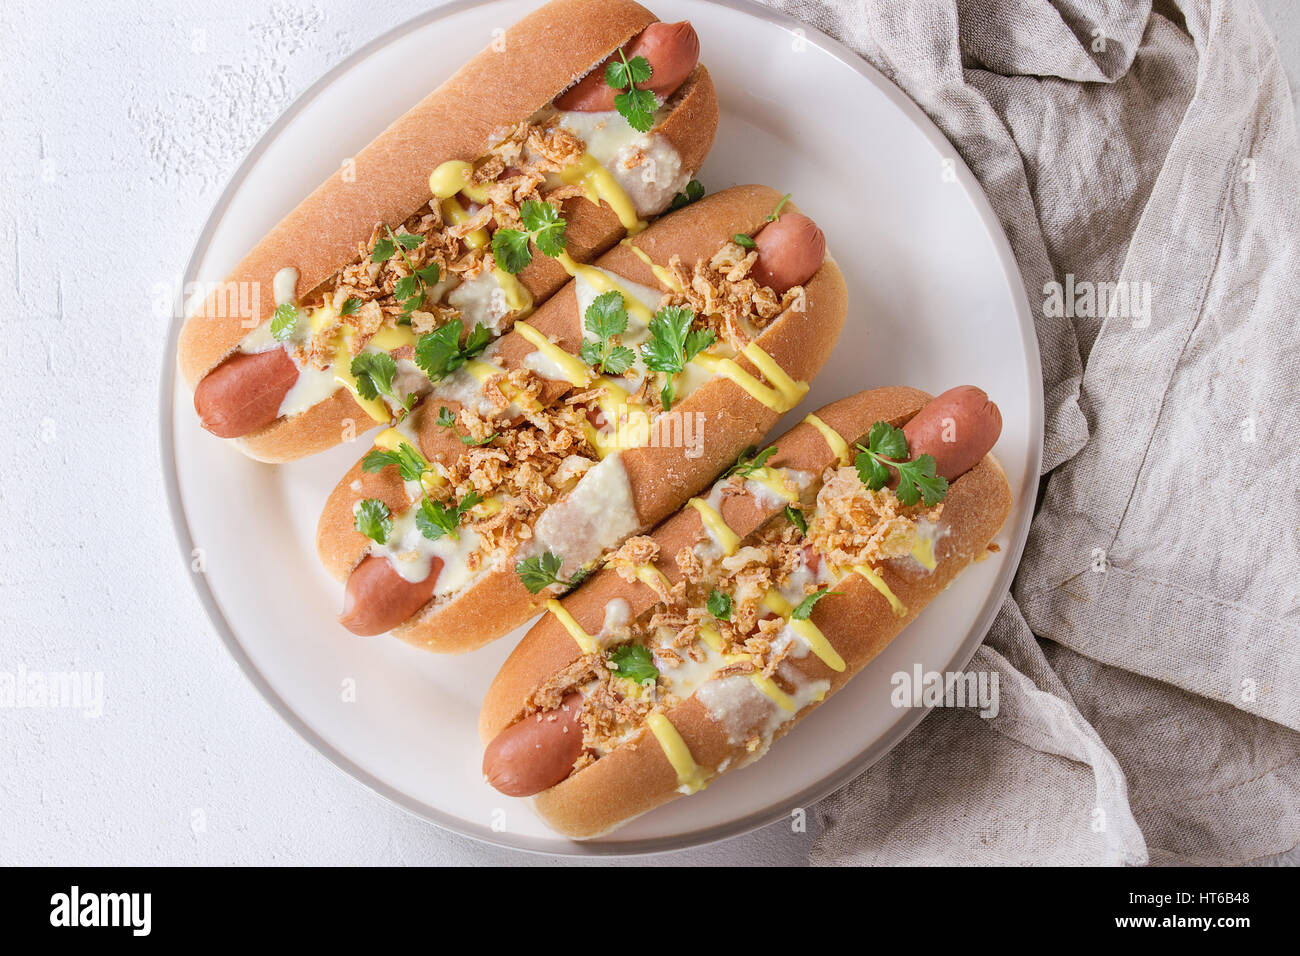 Hot Dogs mit Wurst, gebratenen Zwiebeln, Koriander, Käse-Sauce und Senf, serviert auf weißen Keramikplatte mit Textil über weißem Beton Textur Stockfoto